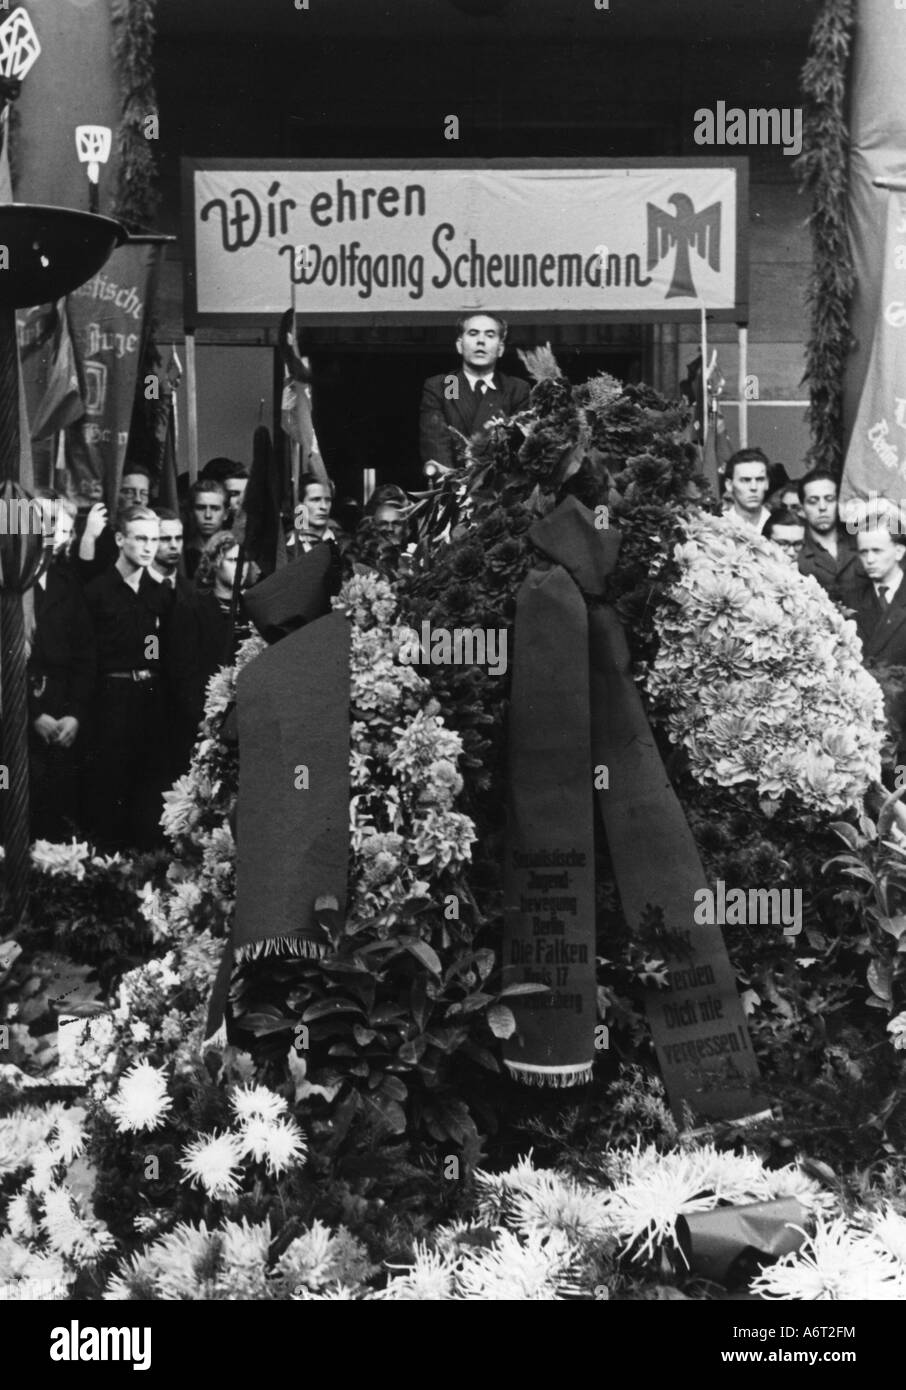 Eventi, dopoguerra, politica, funerali del giovane leader socialistico sparato Wolfgang Scheunemann, Johannis cementary, Plötzensee, Berlino, 16.9.1948, Foto Stock